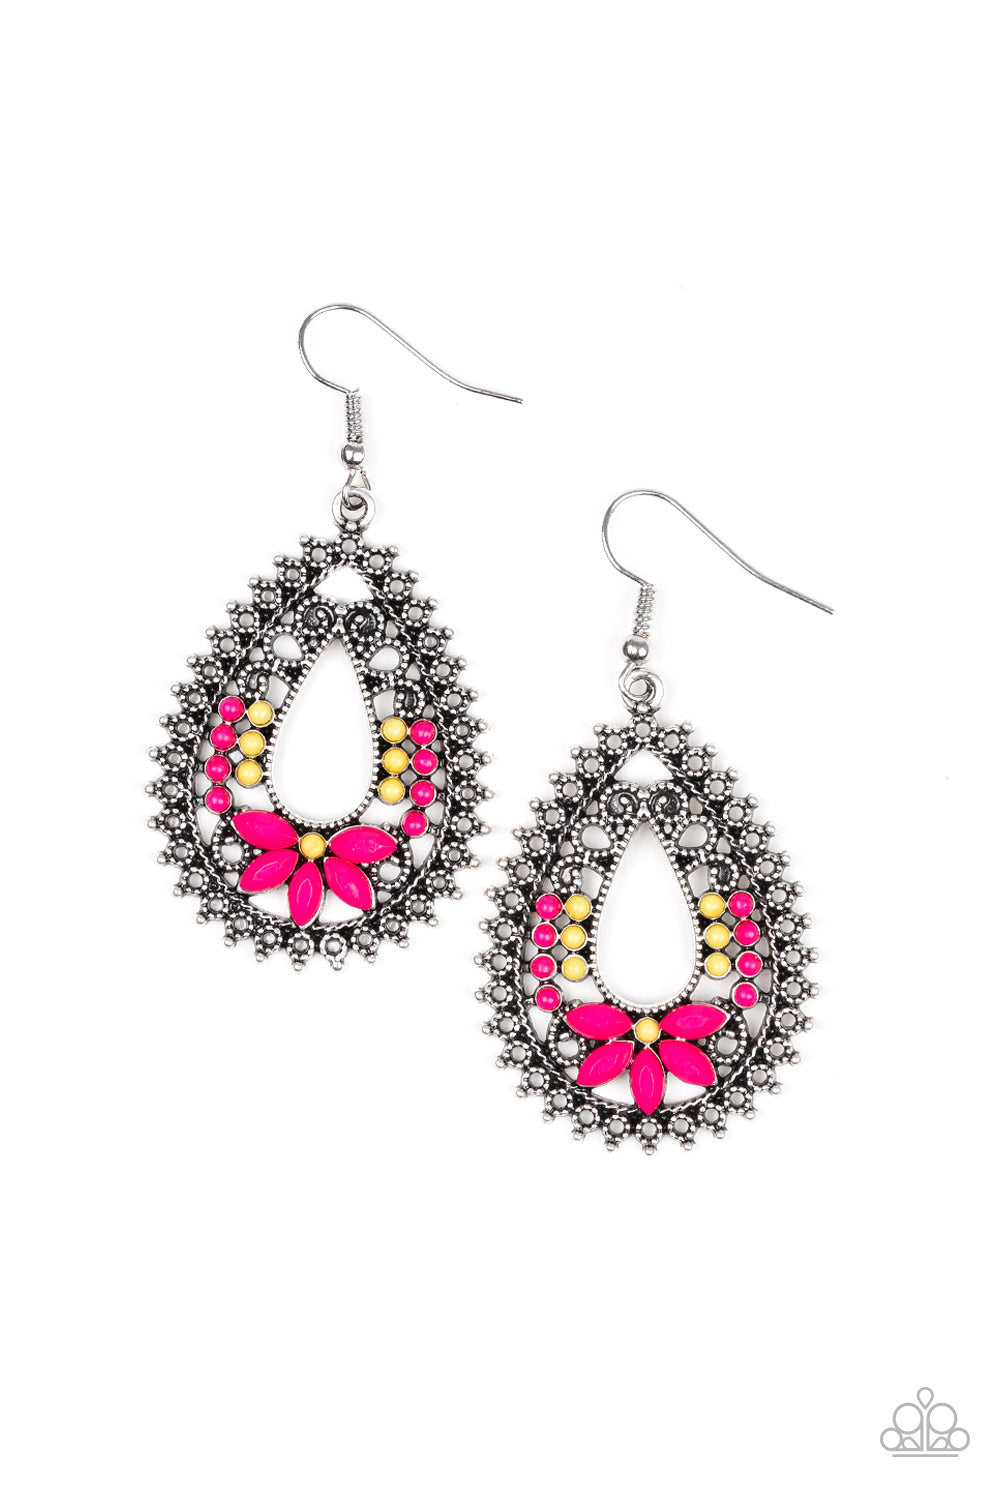 Paparazzi Atta-GALA - Pink - Teardrop Earrings - $5 Jewelry With Ashley Swint